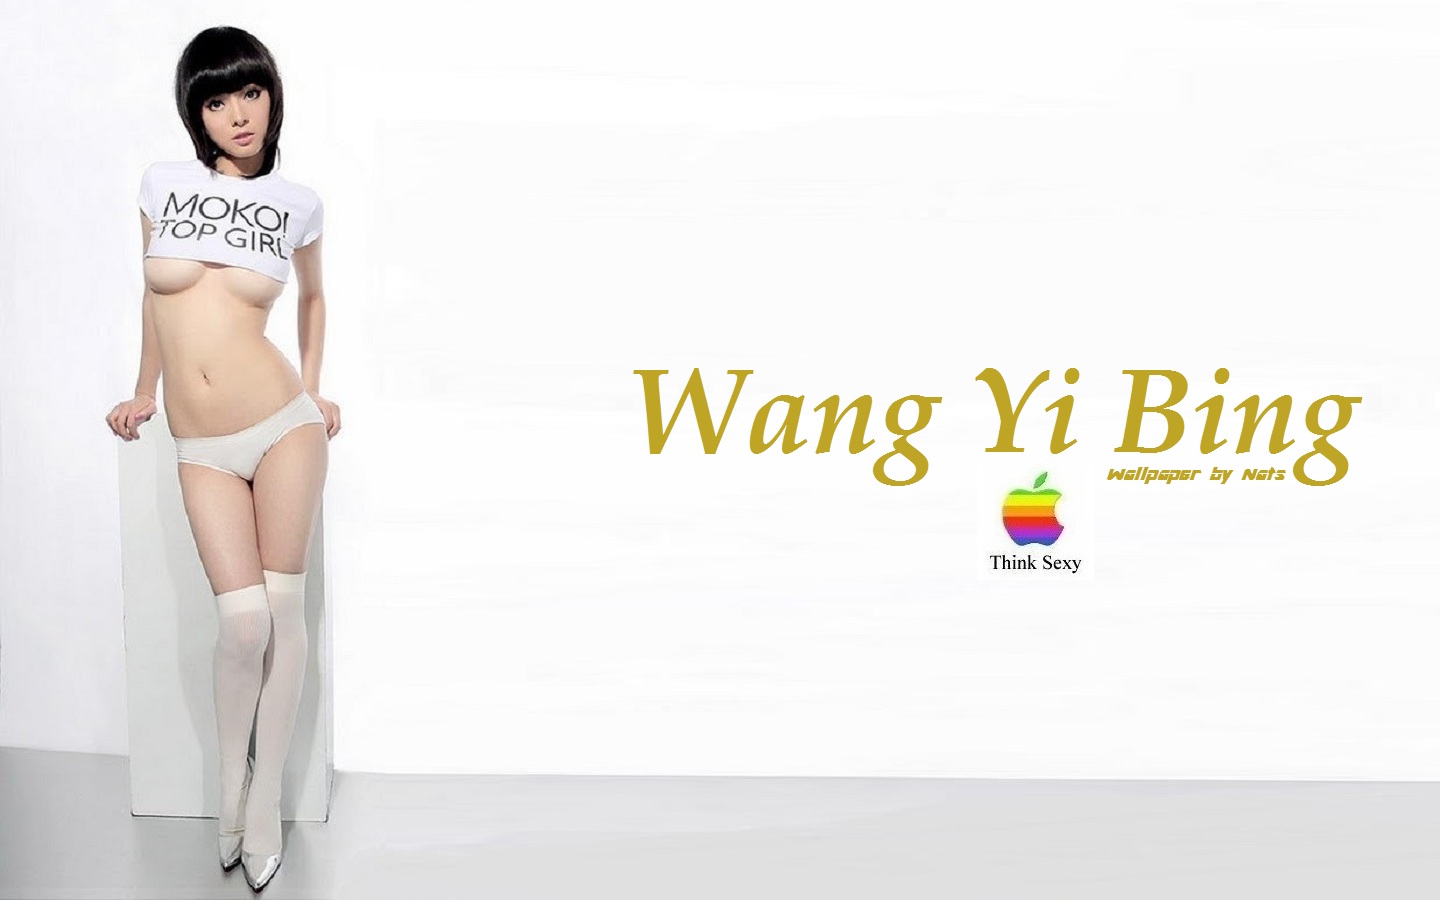 Download HQ Wang Yi Bing wallpaper / Celebrities Female / 1440x900